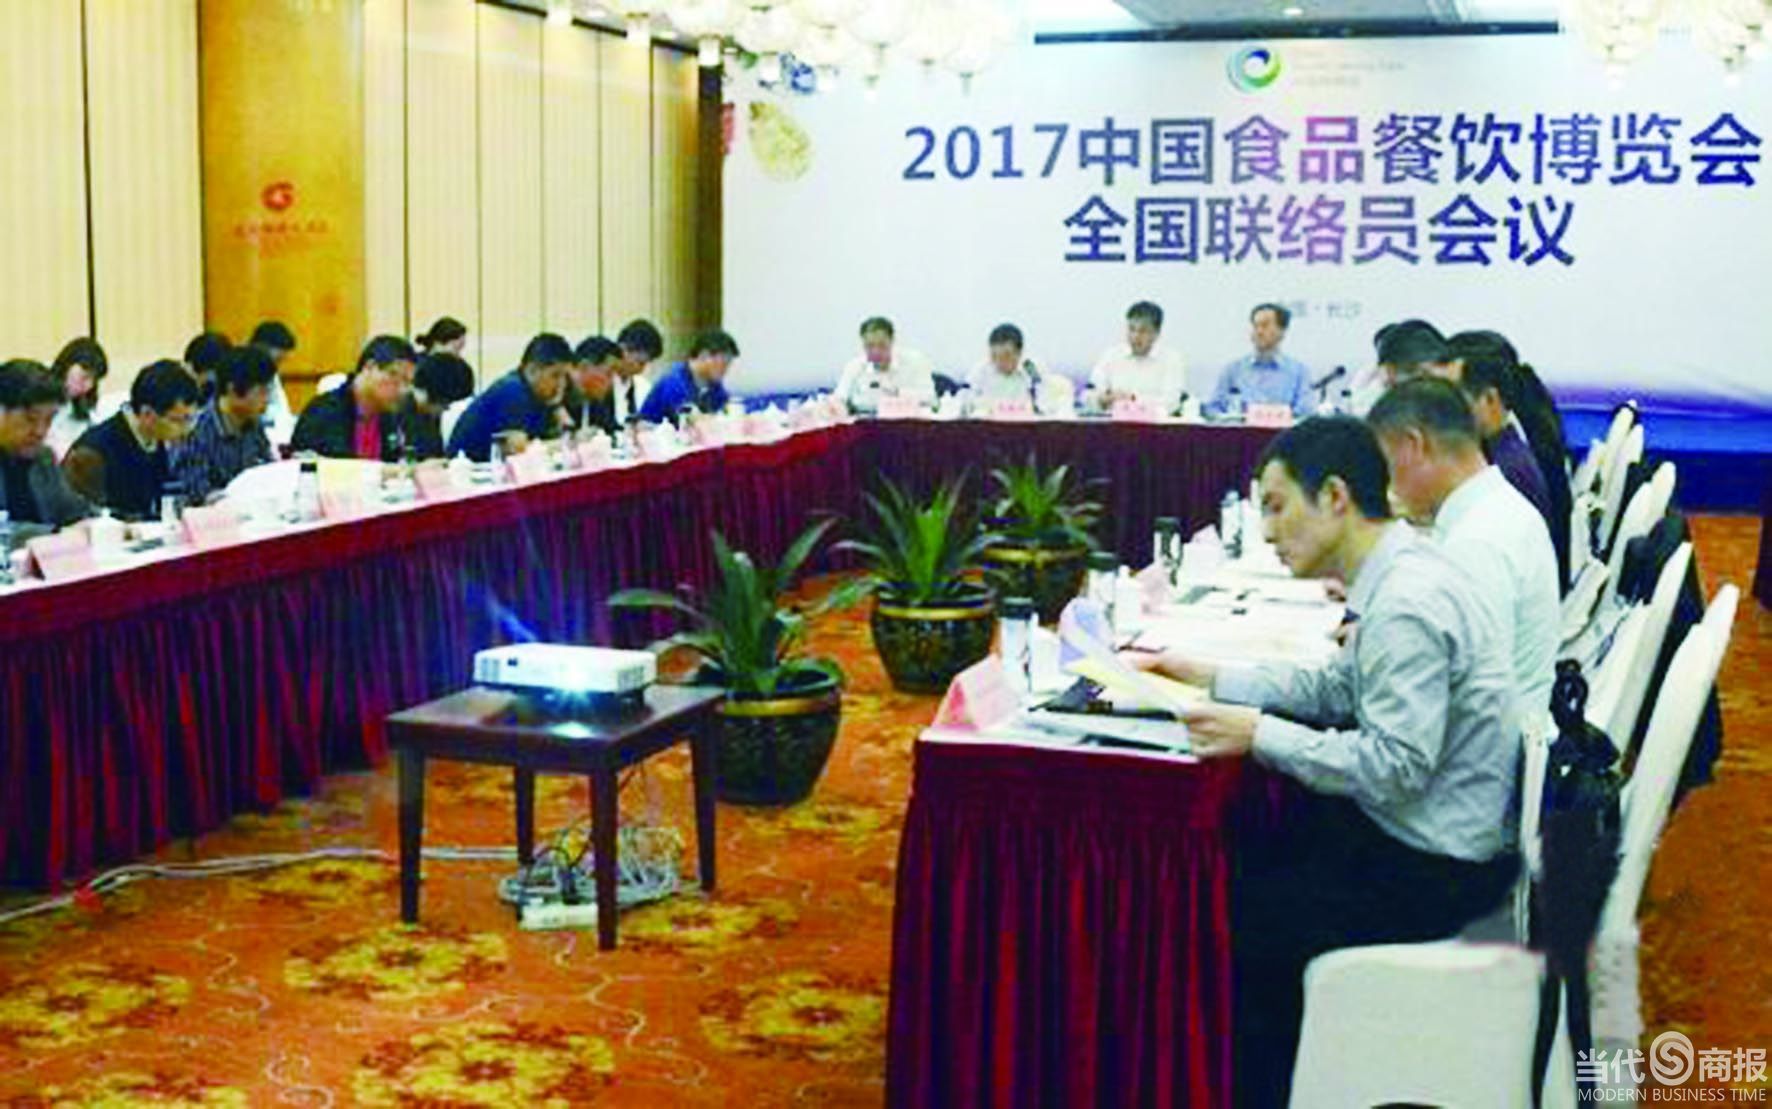 北京召開的2017中國食品餐飲博覽會全國聯絡員會議